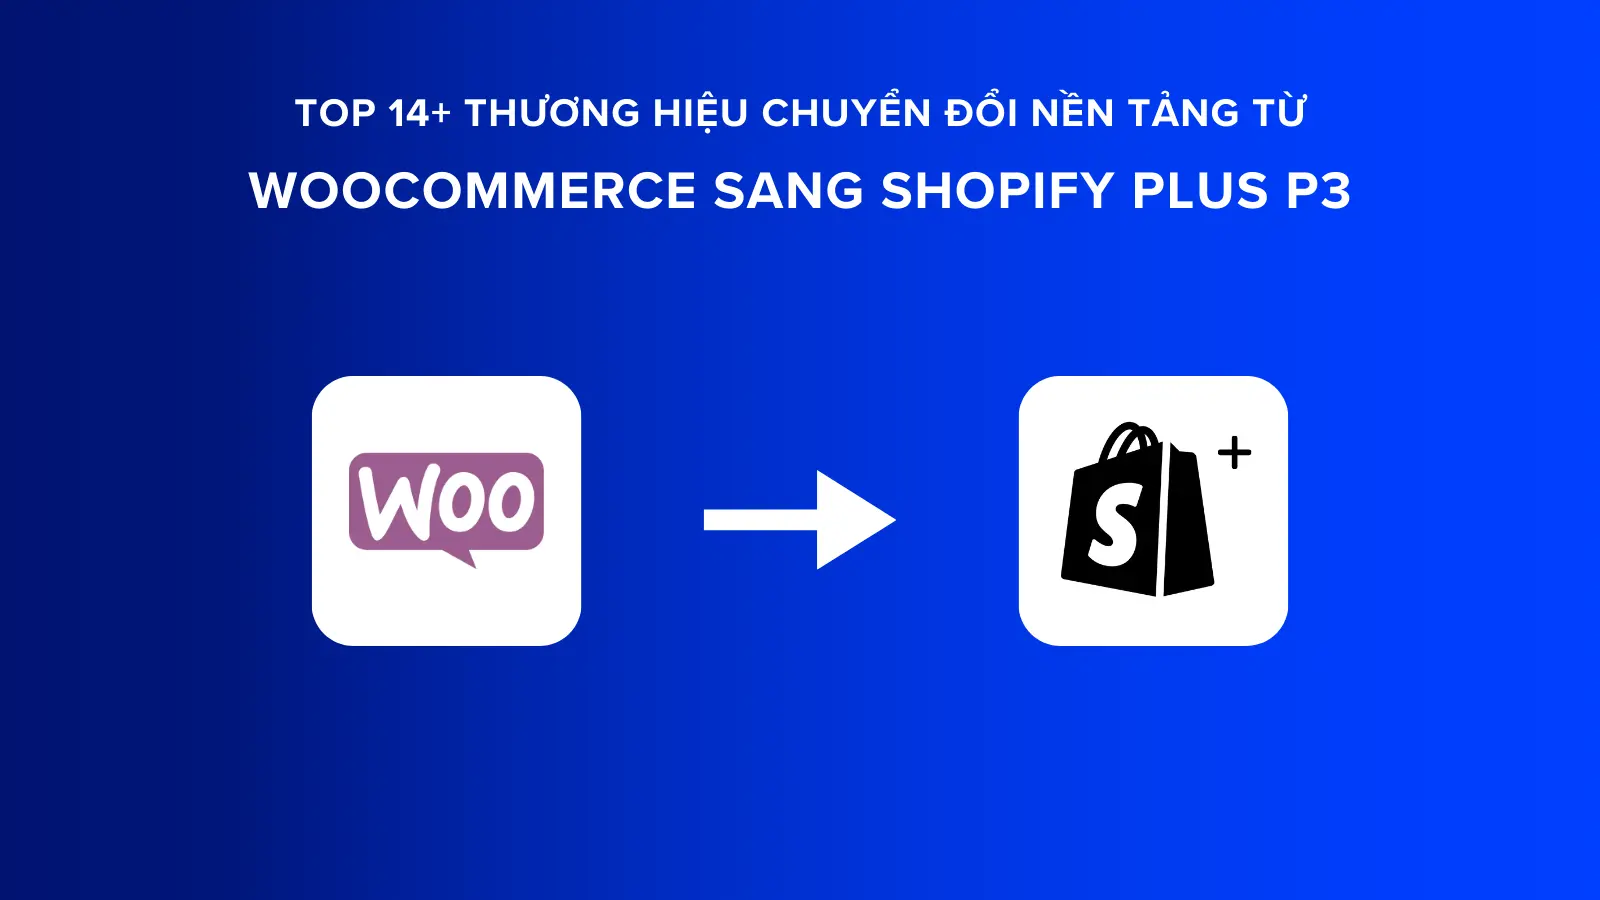 Top 14+ Thương Hiệu Chuyển Đổi Nền Tảng từ WooCommerce sang Shopify Plus P3